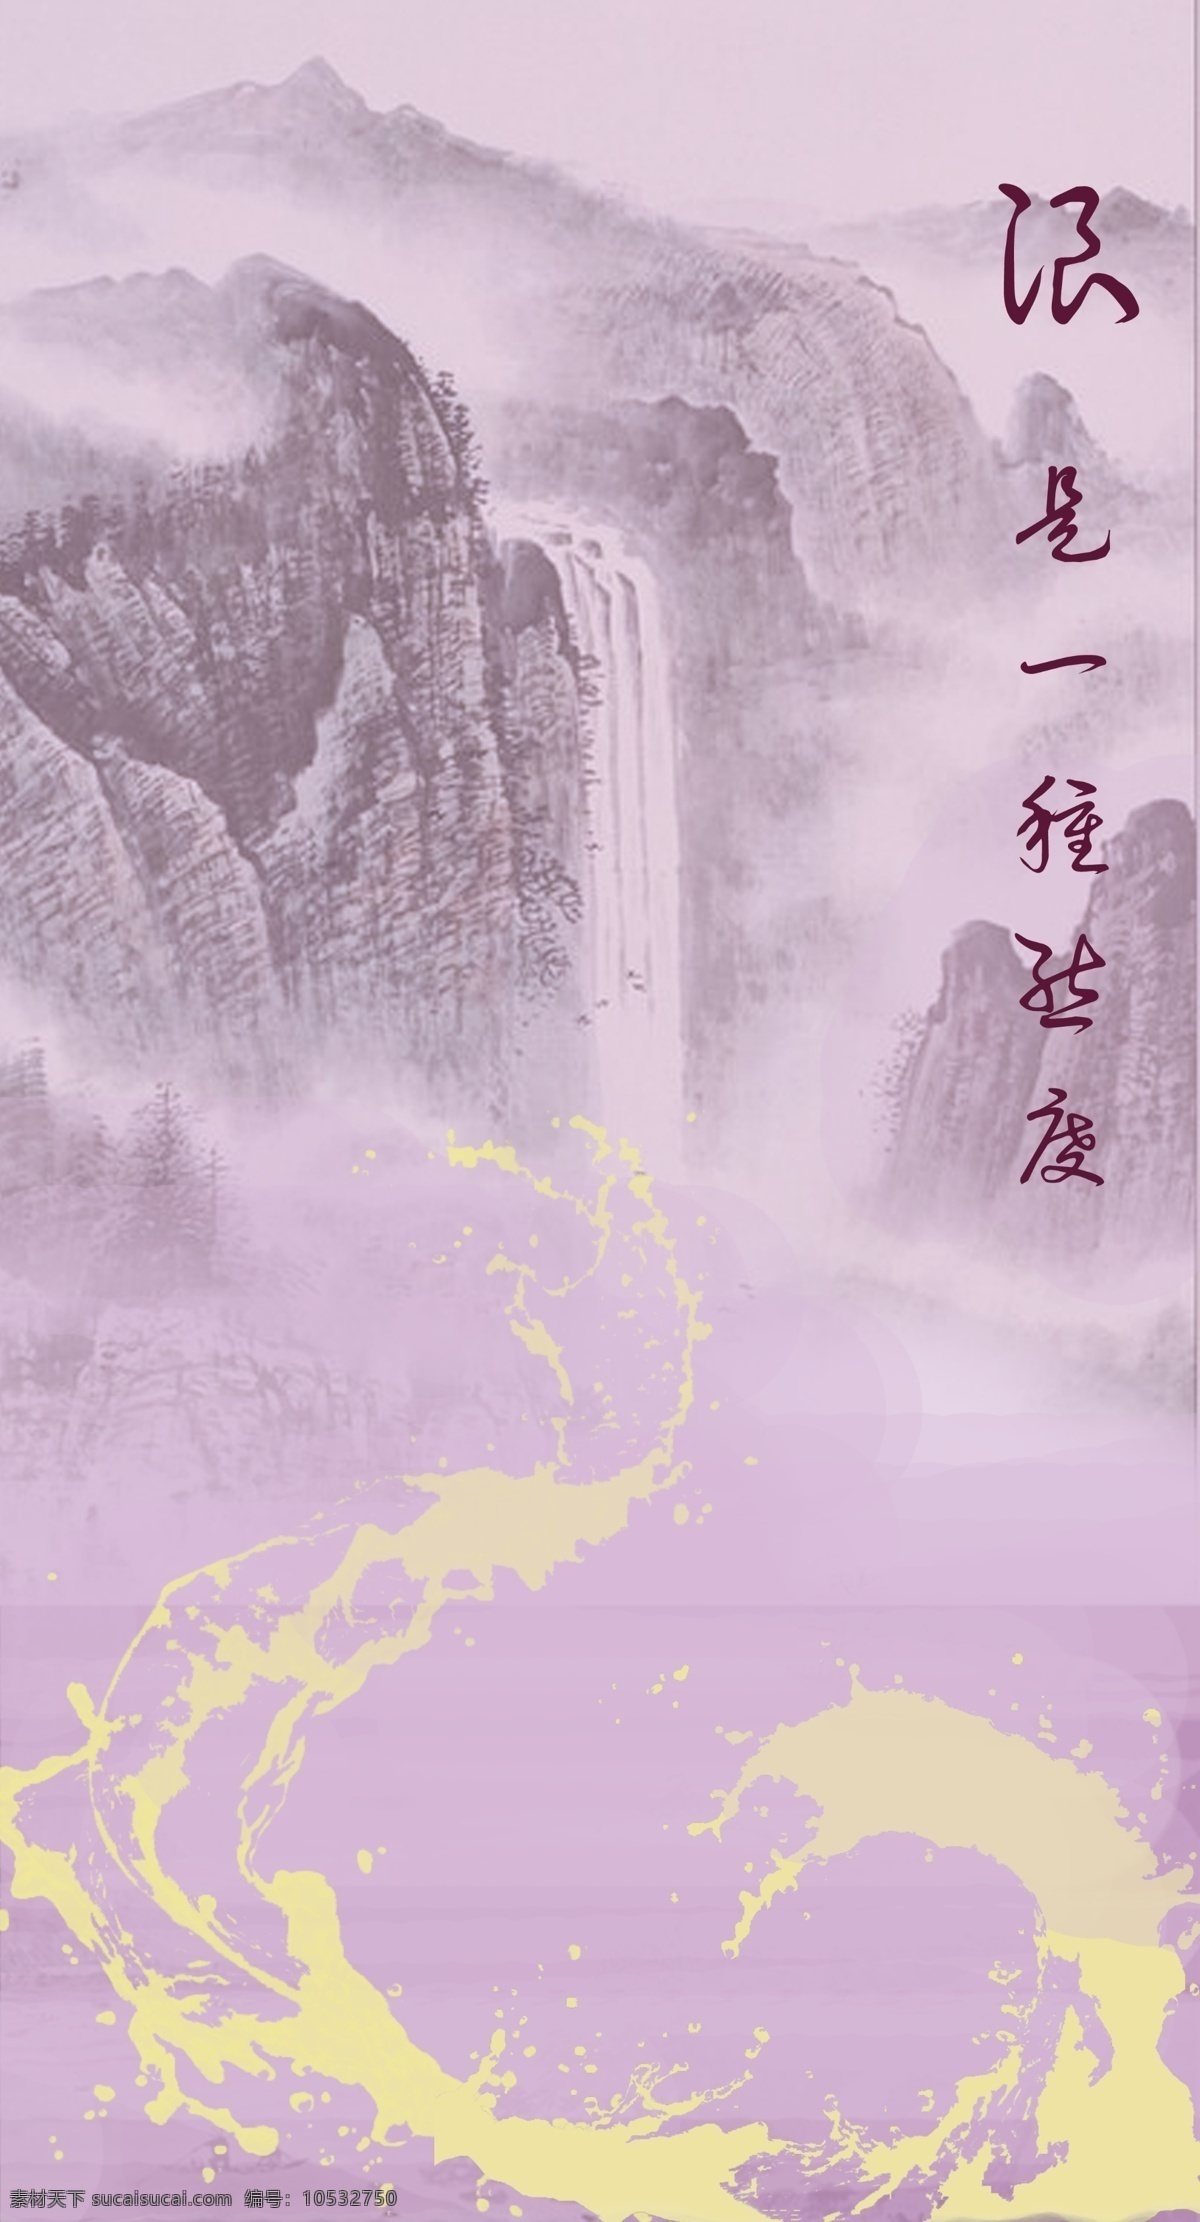 浪 种 态度 海报 新奇的水墨 浪花 紫色 黄色 水墨 中国 风 古风 传统 山水 背景